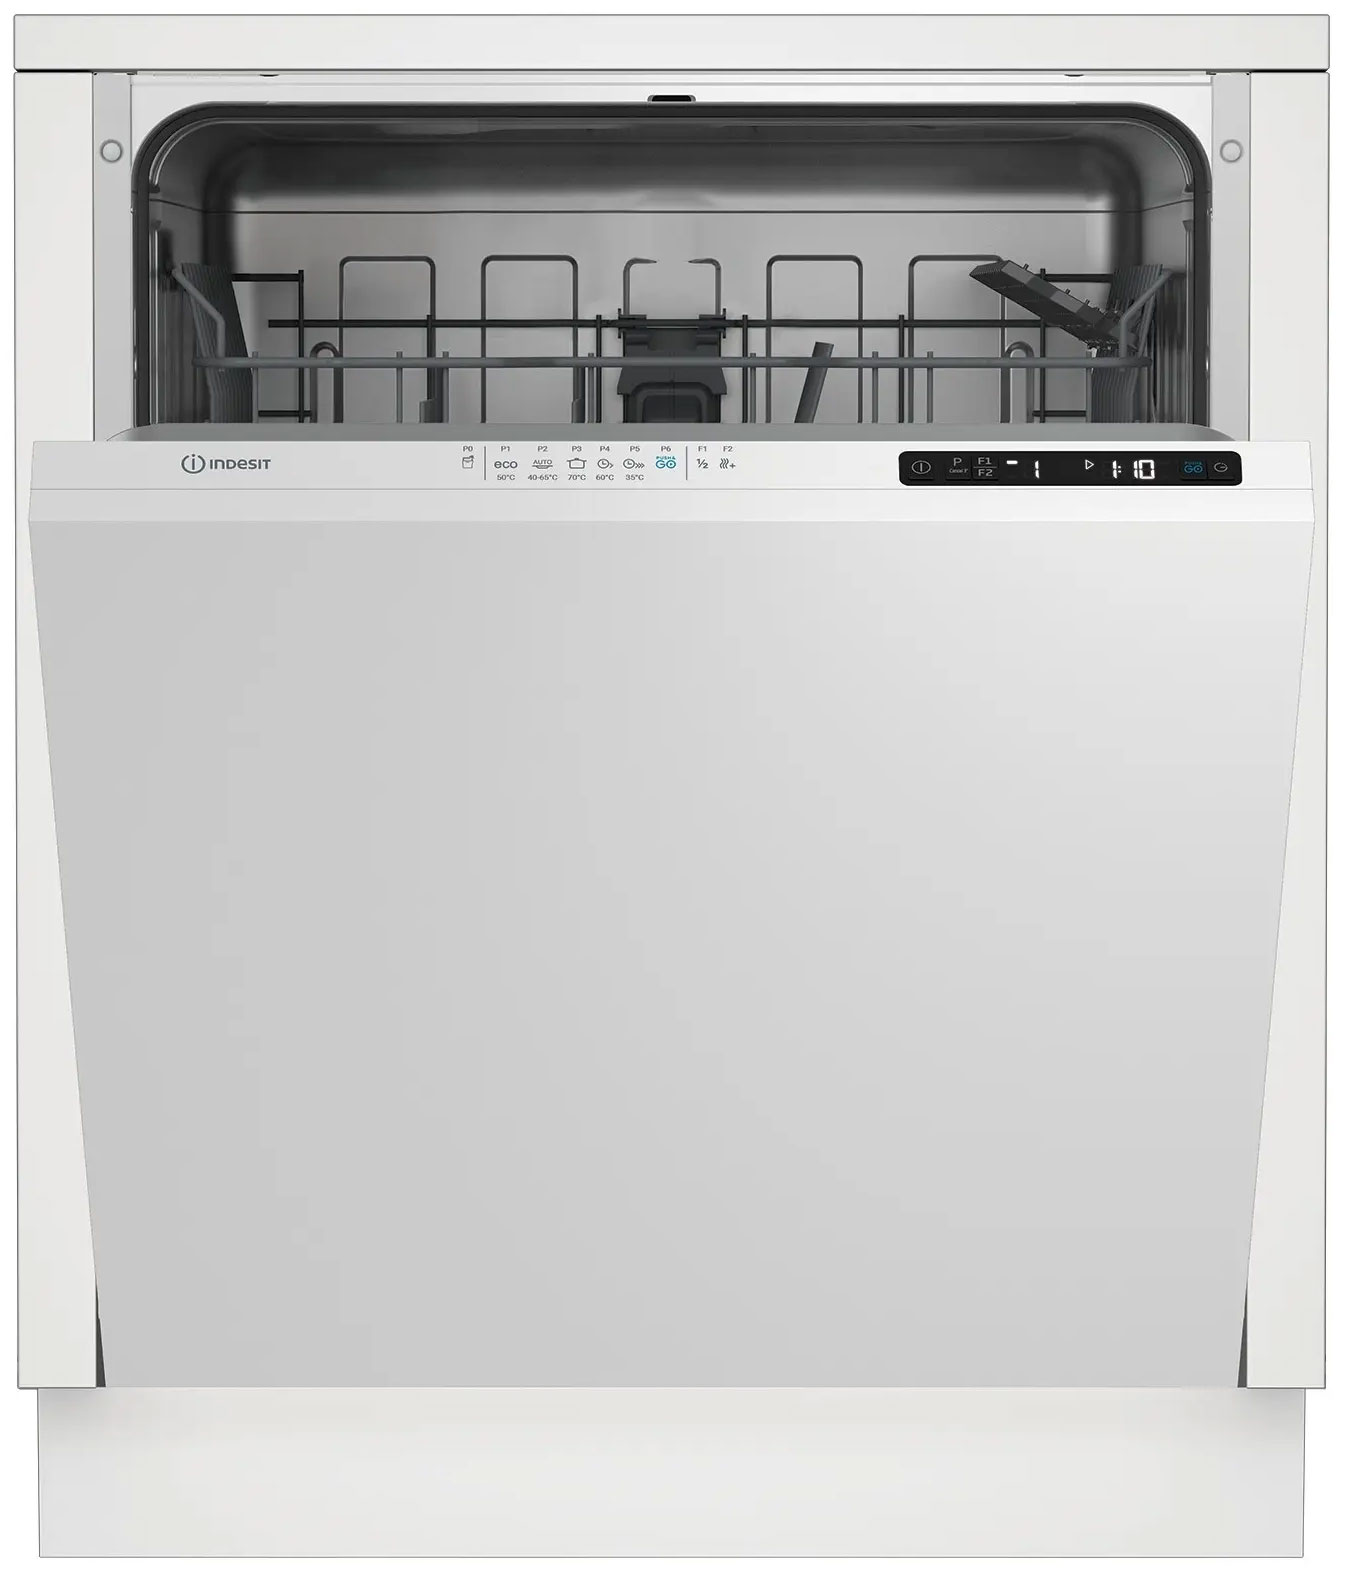 Встраиваемая посудомоечная машина Indesit DI 4C68 AE встраиваемая посудомоечная машина indesit dis 1c69